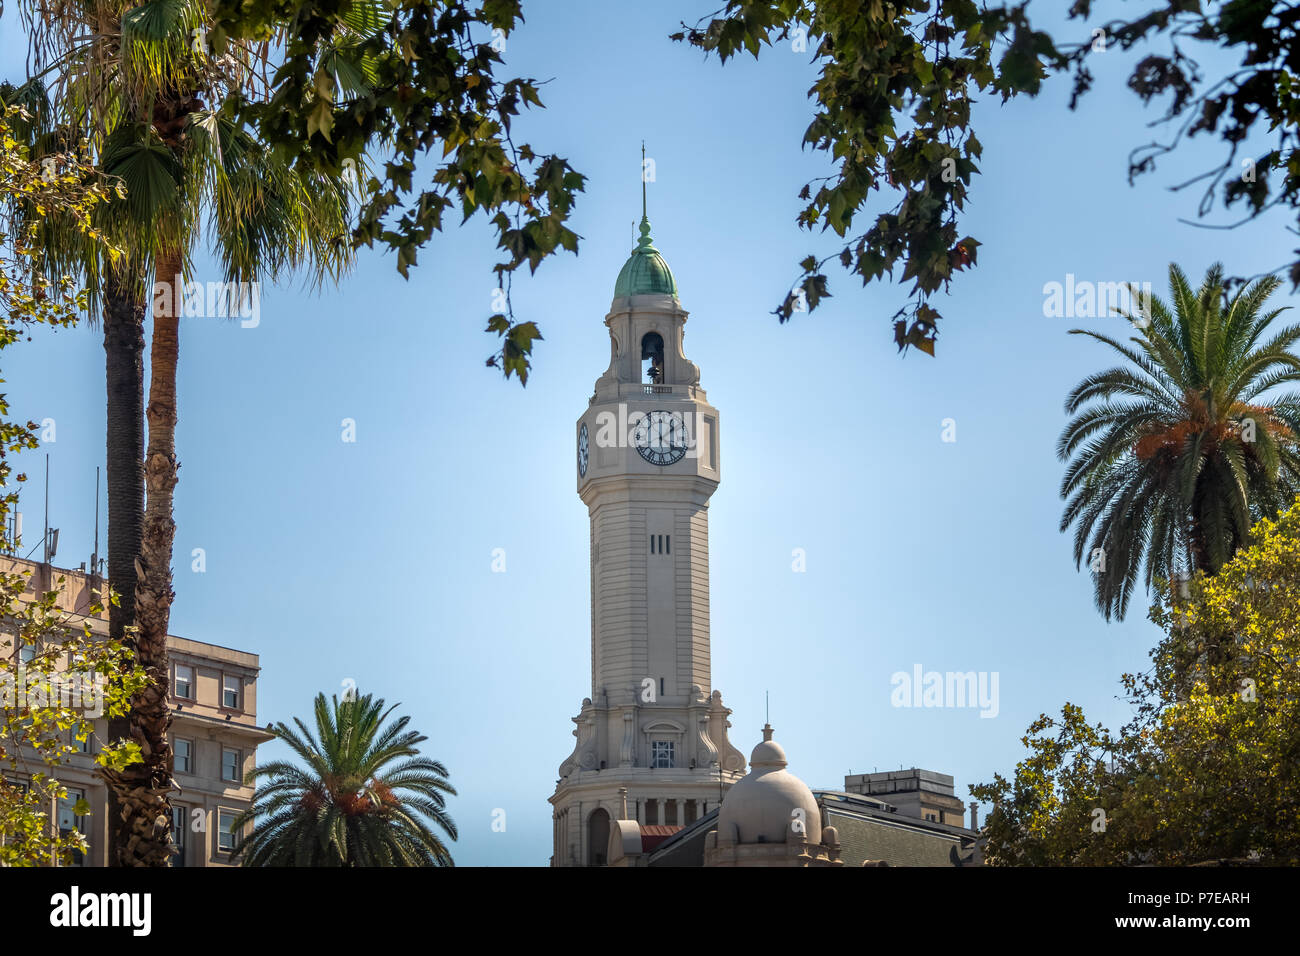 Turm von Buenos Aires Stadt Gesetzgebung - Legislatura de la Ciudad de Buenos Aires - Buenos Aires, Argentinien Stockfoto